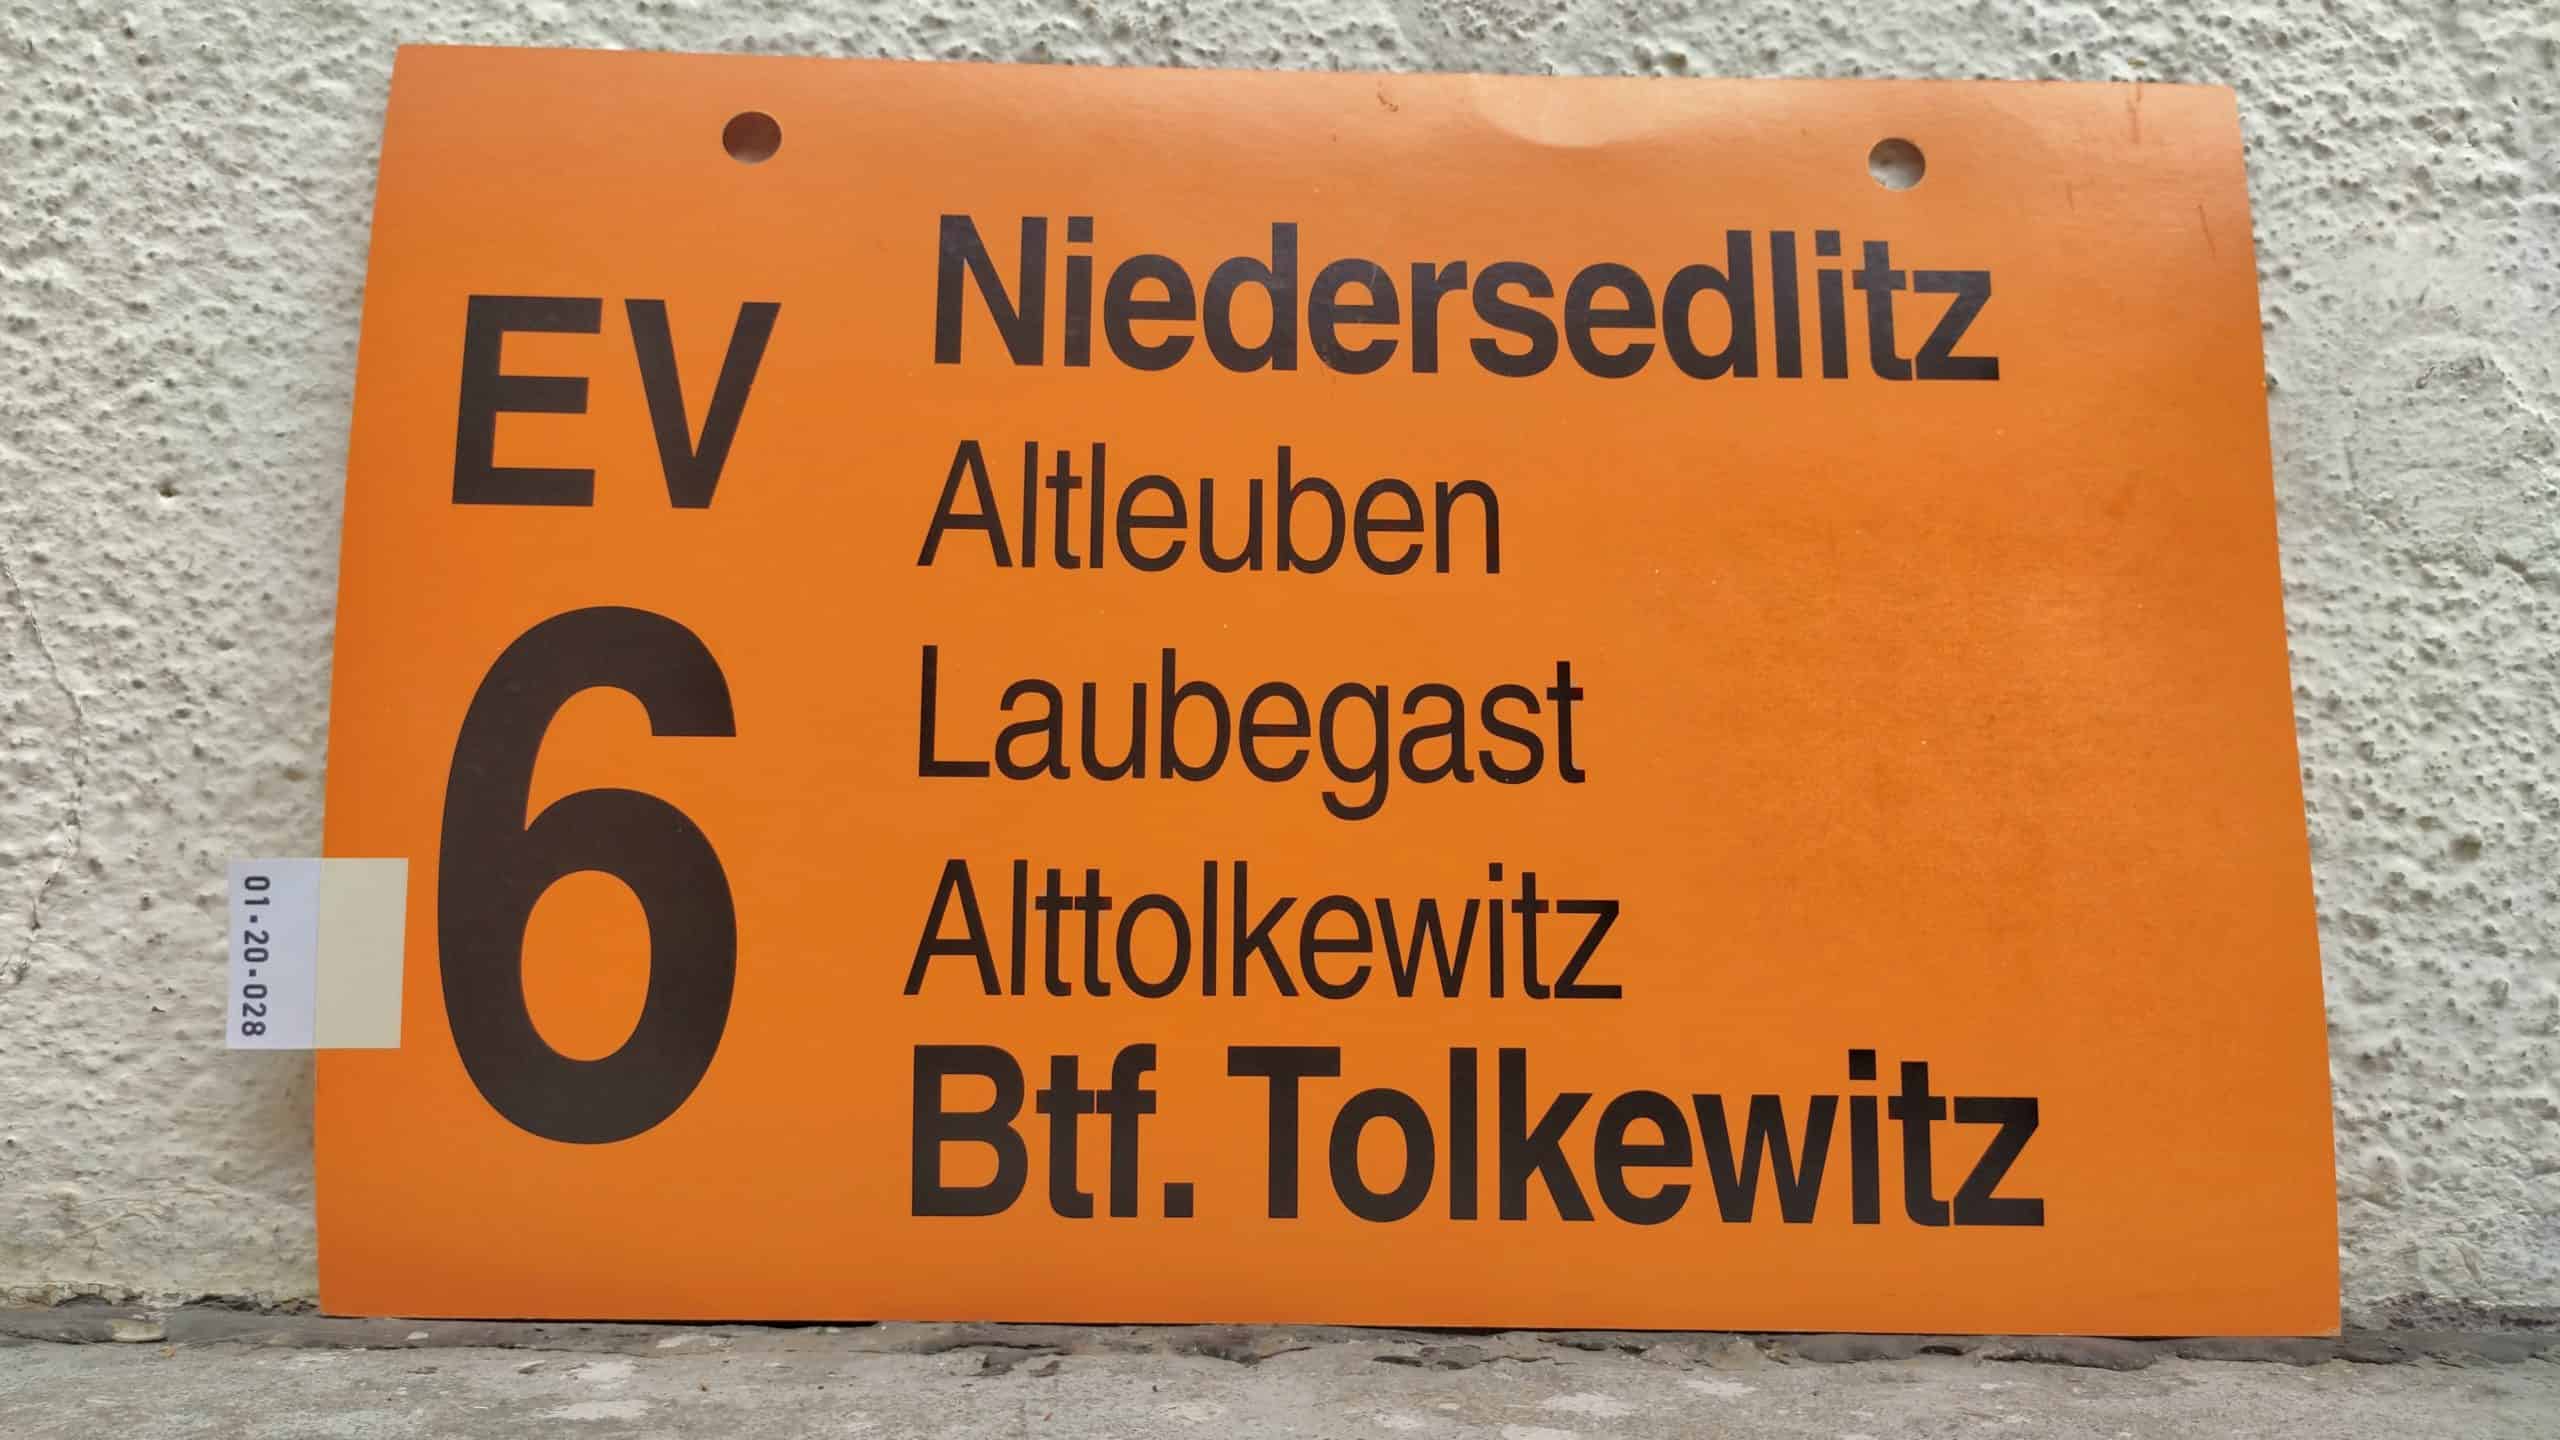 EV 6 Niedersedlitz – Btf. Tolkewitz